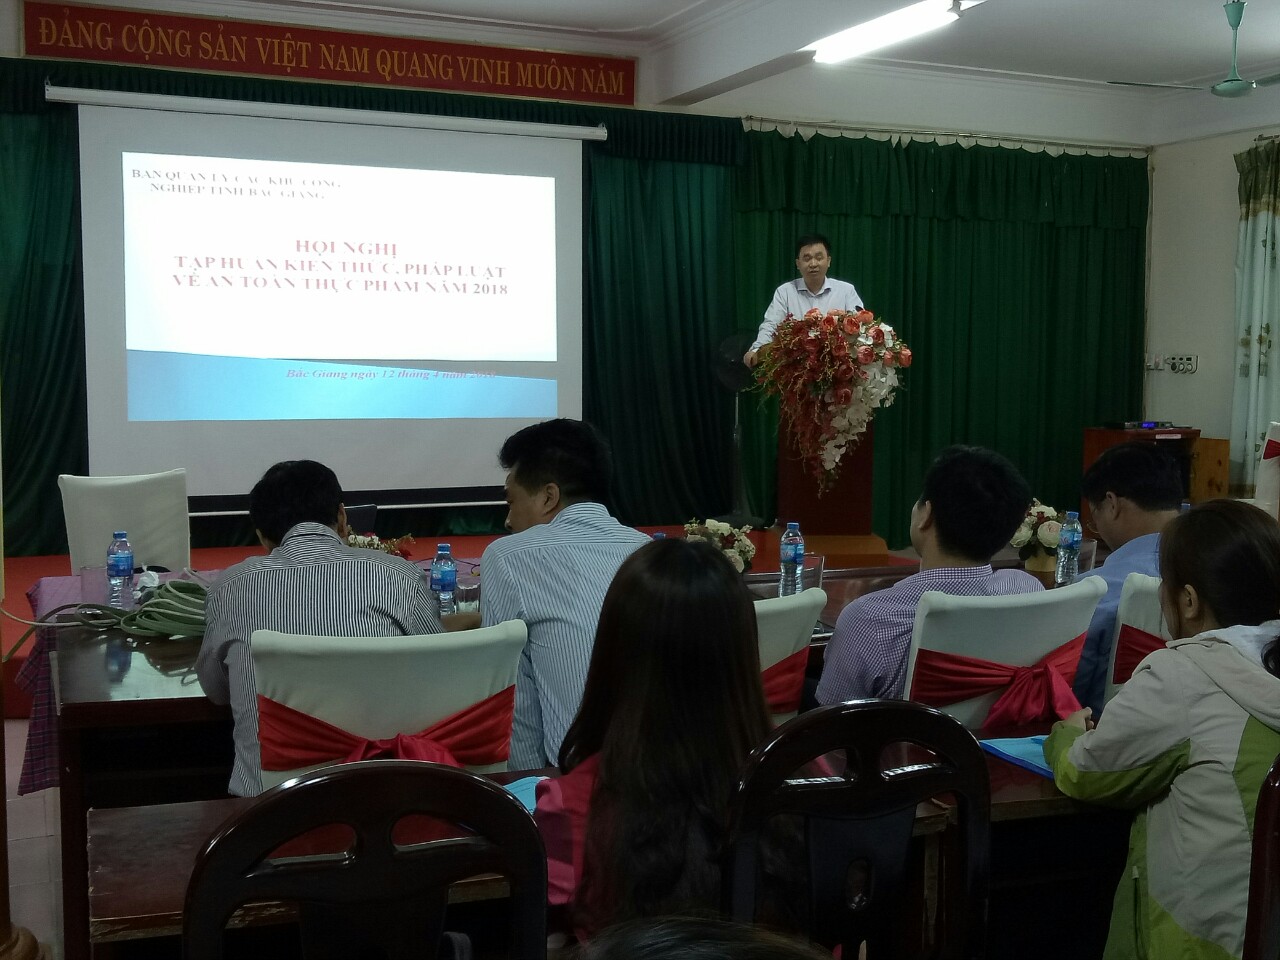 Lãnh đạo Ban Quản lý các khu công nghiệp tỉnh Bắc Giang khai mạc hội nghị tập huấn kiến thức, pháp luật về an toàn thực phẩm ngày 12/4/2018